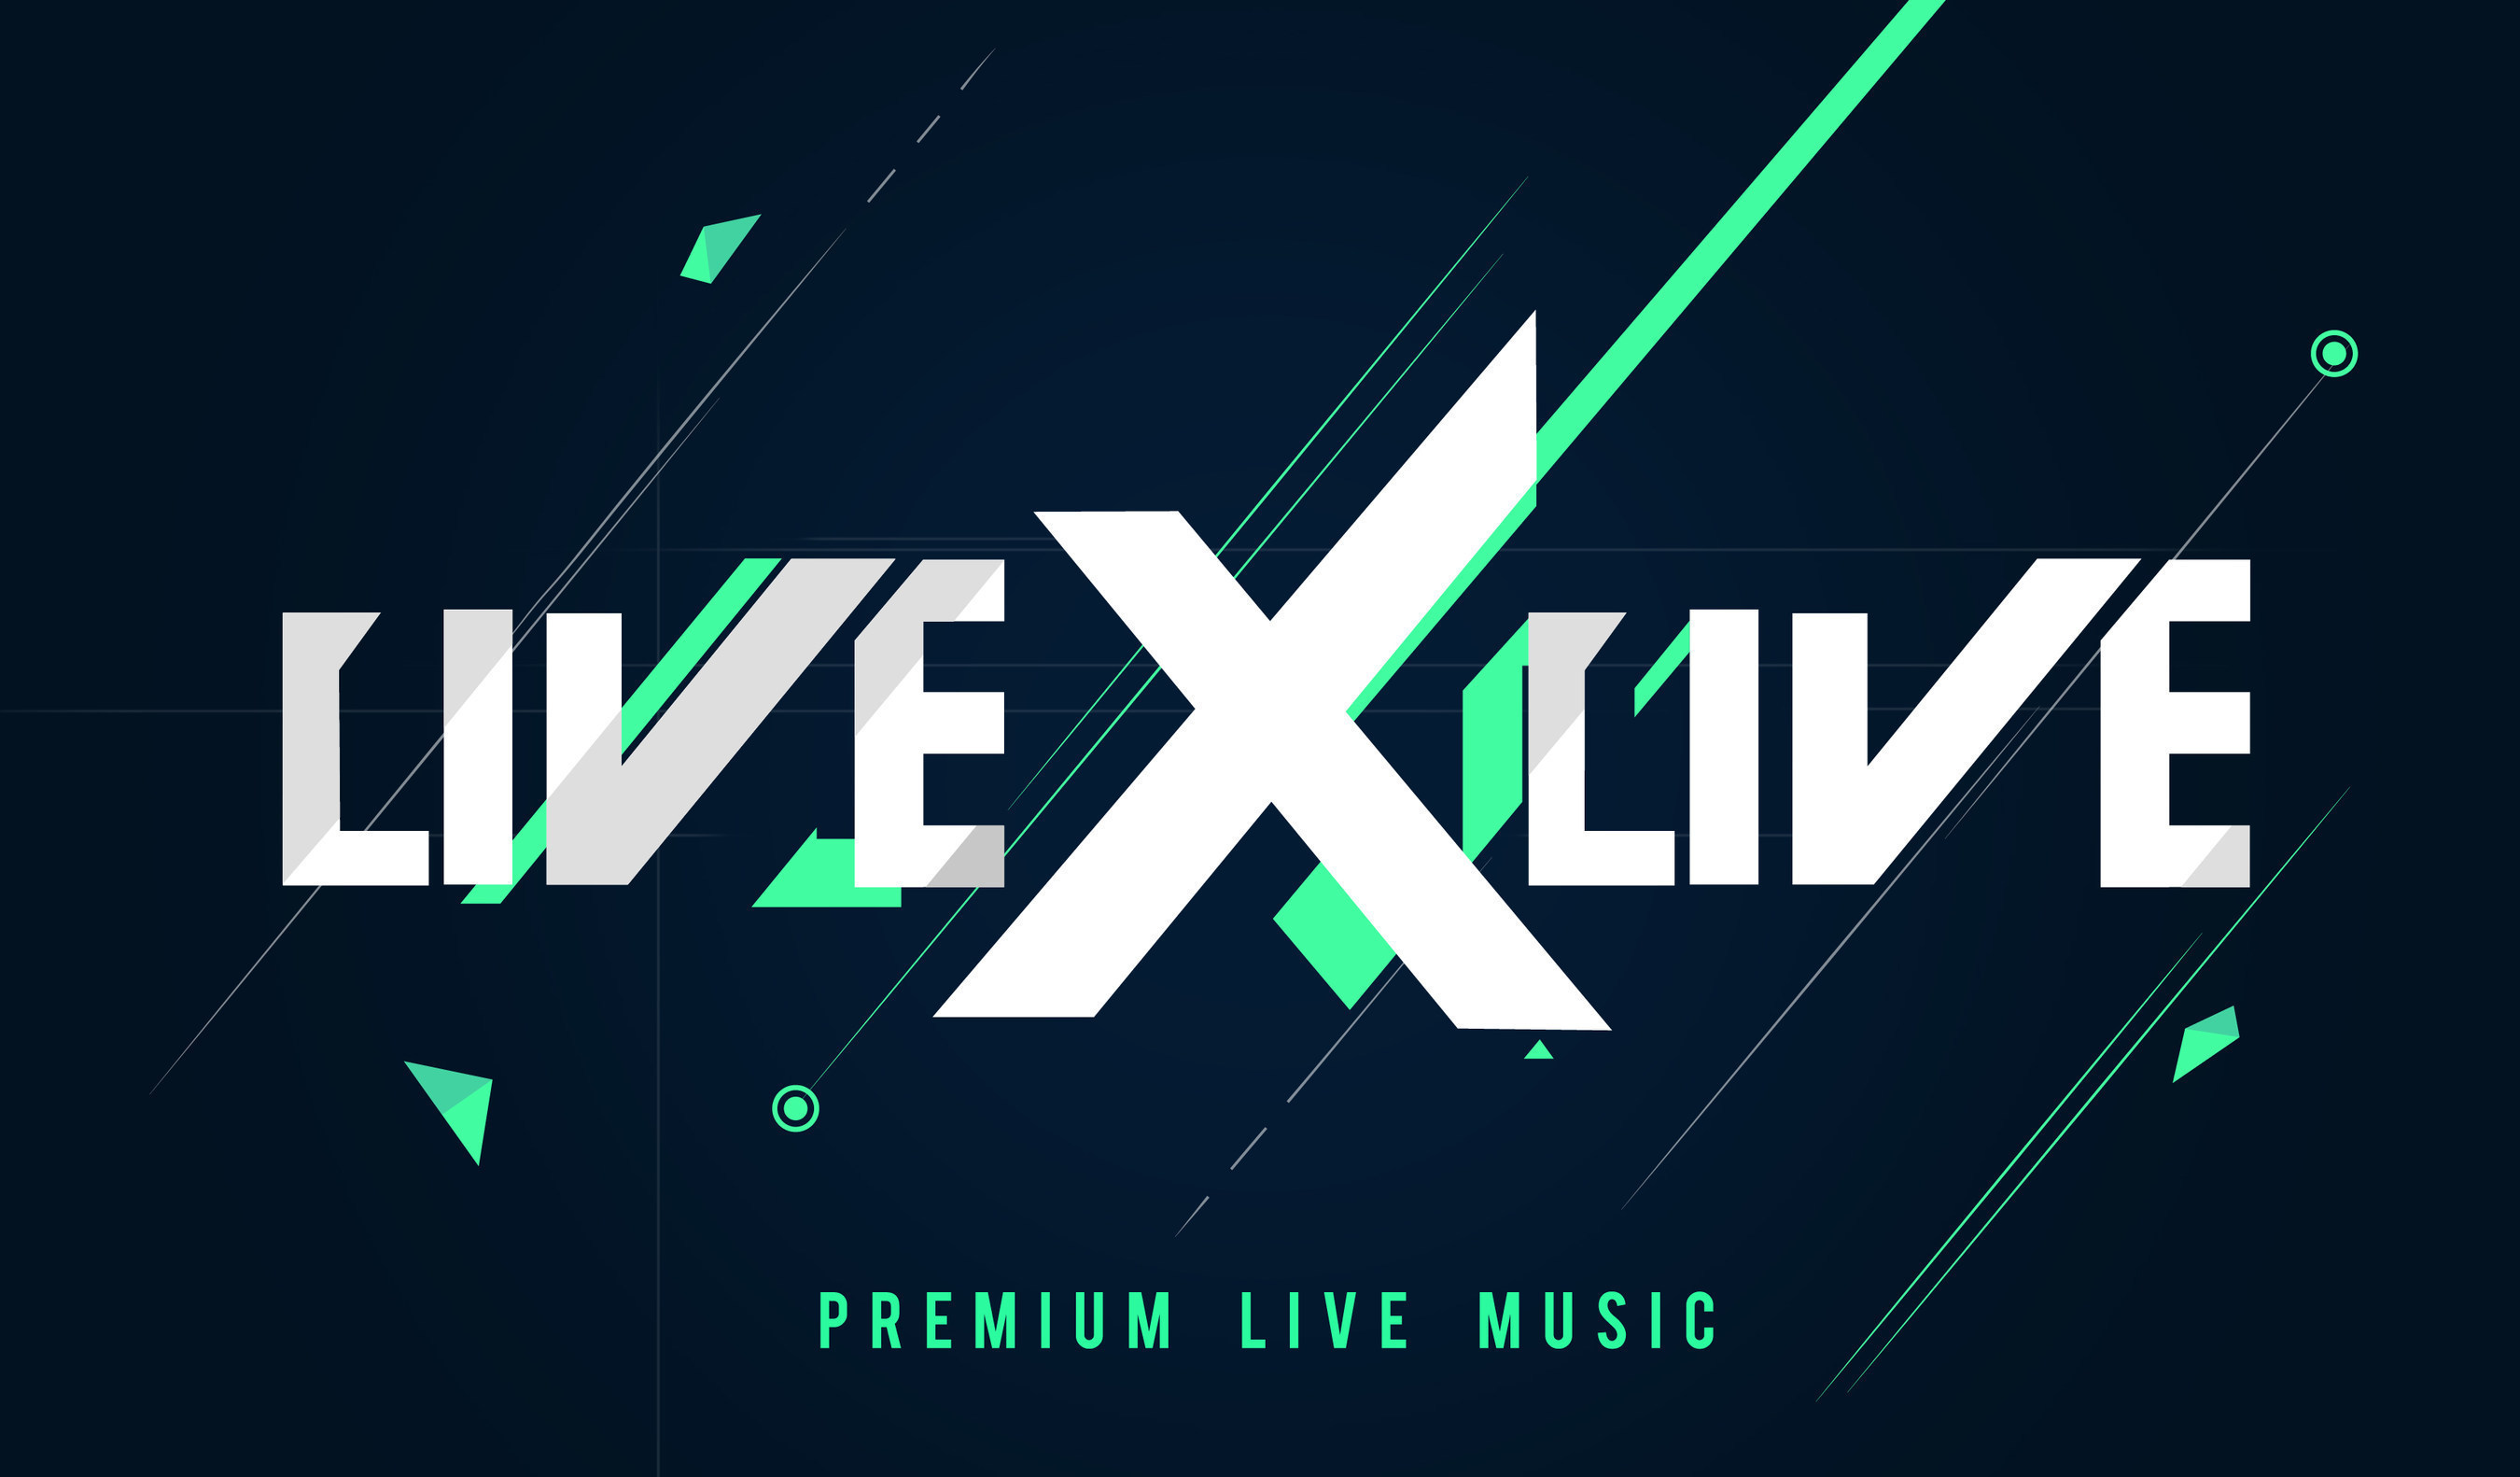 livexlive video